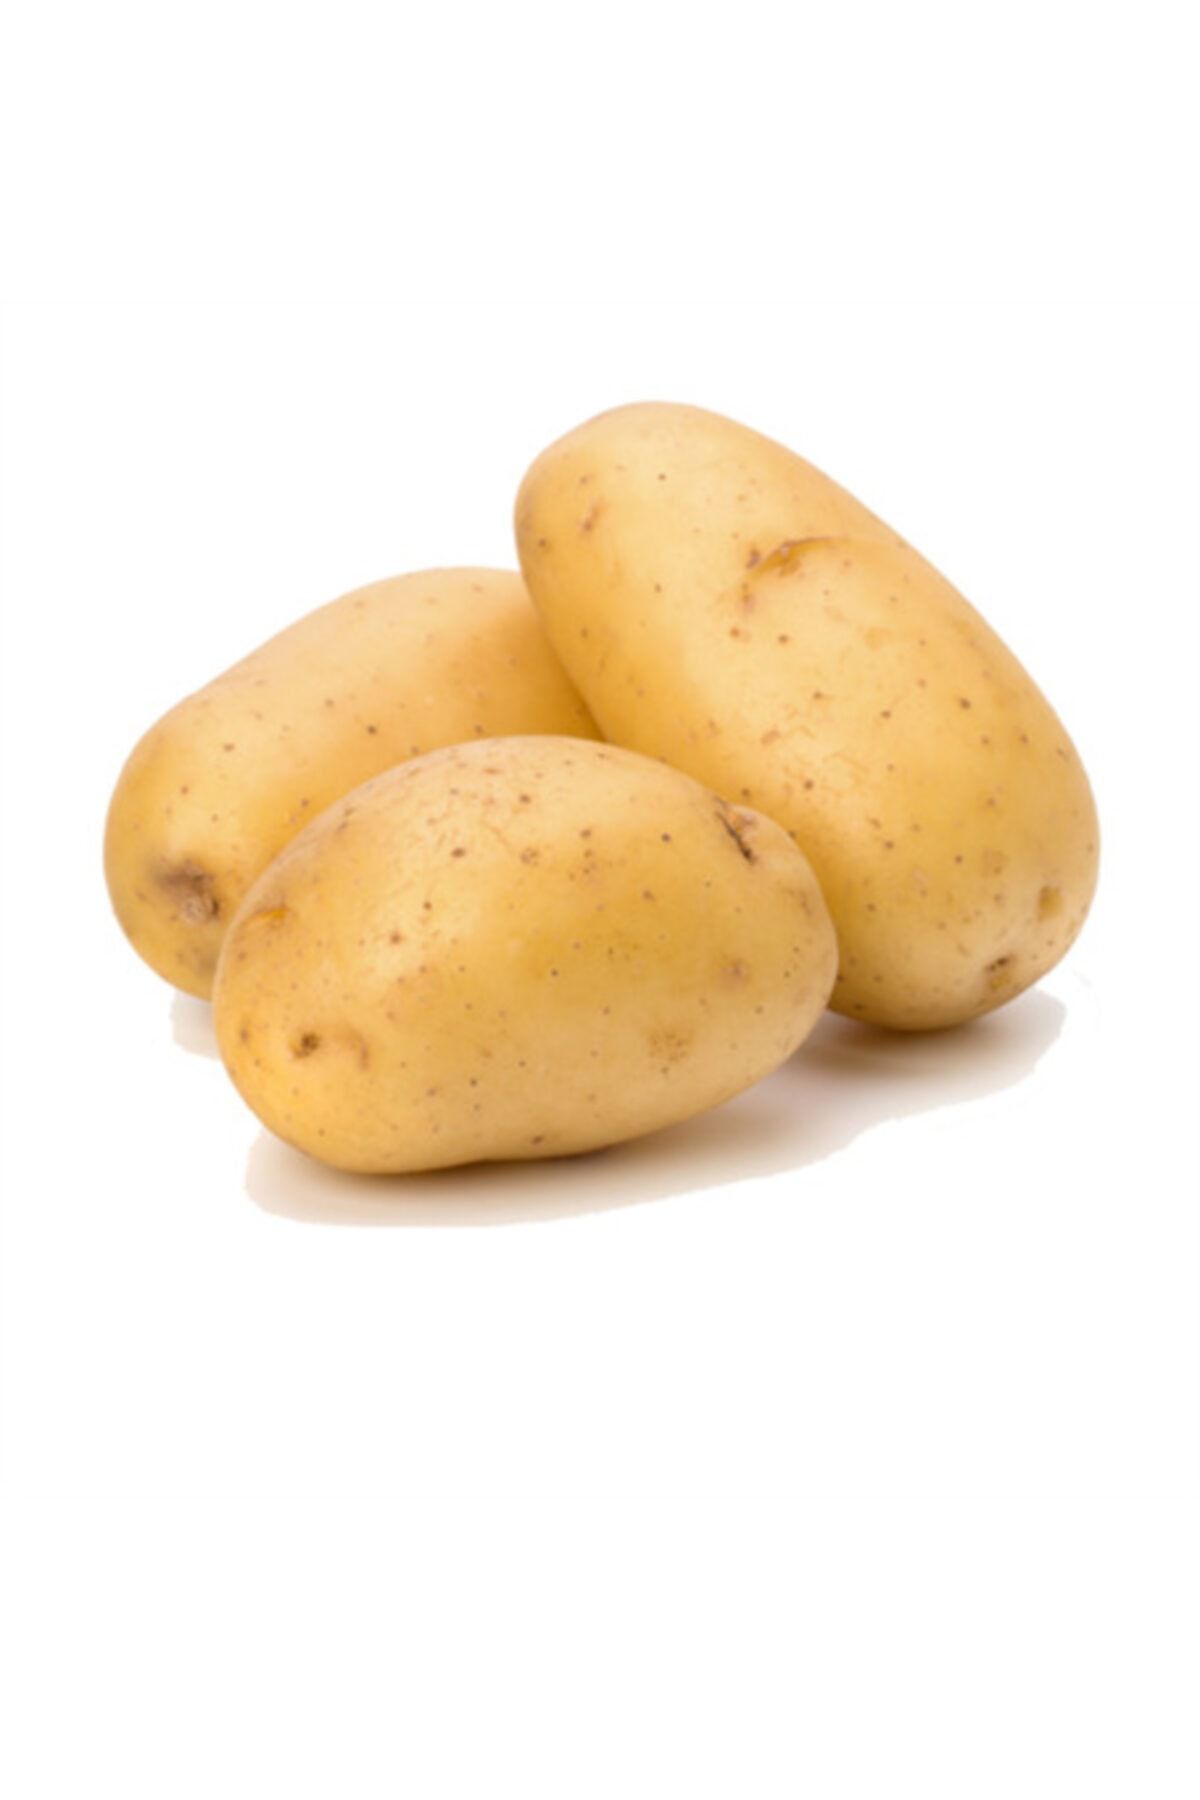 Yenir tarım ürünleri Patates Ödemiş File 3kg (PREMİUM)